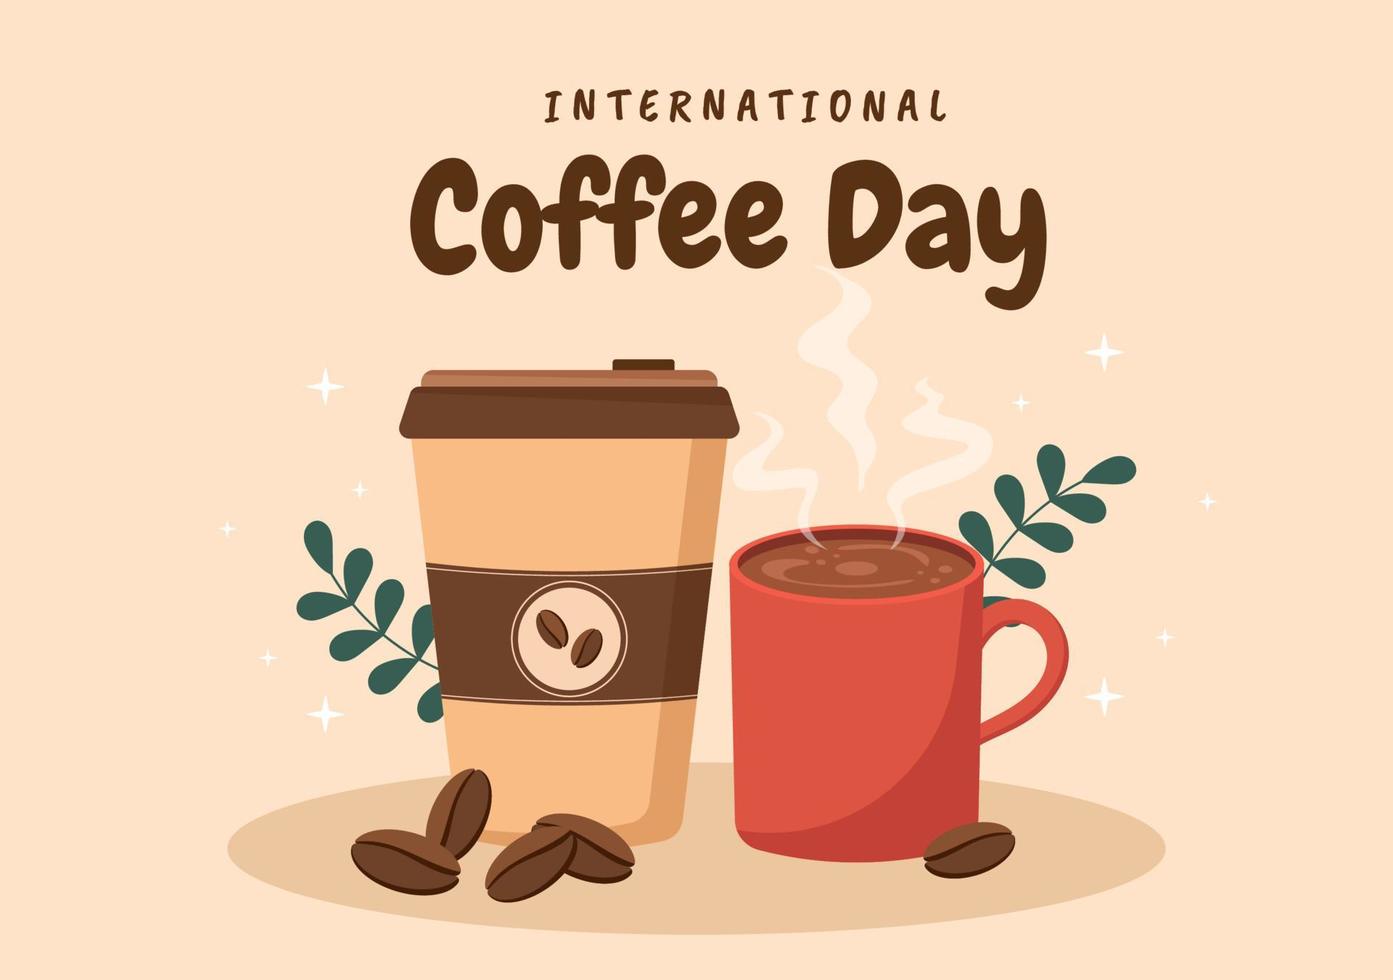 internationale koffiedag op 1 oktober handgetekende cartoon vlakke afbeelding met cacaobonen en een glas warme drank ontwerp vector